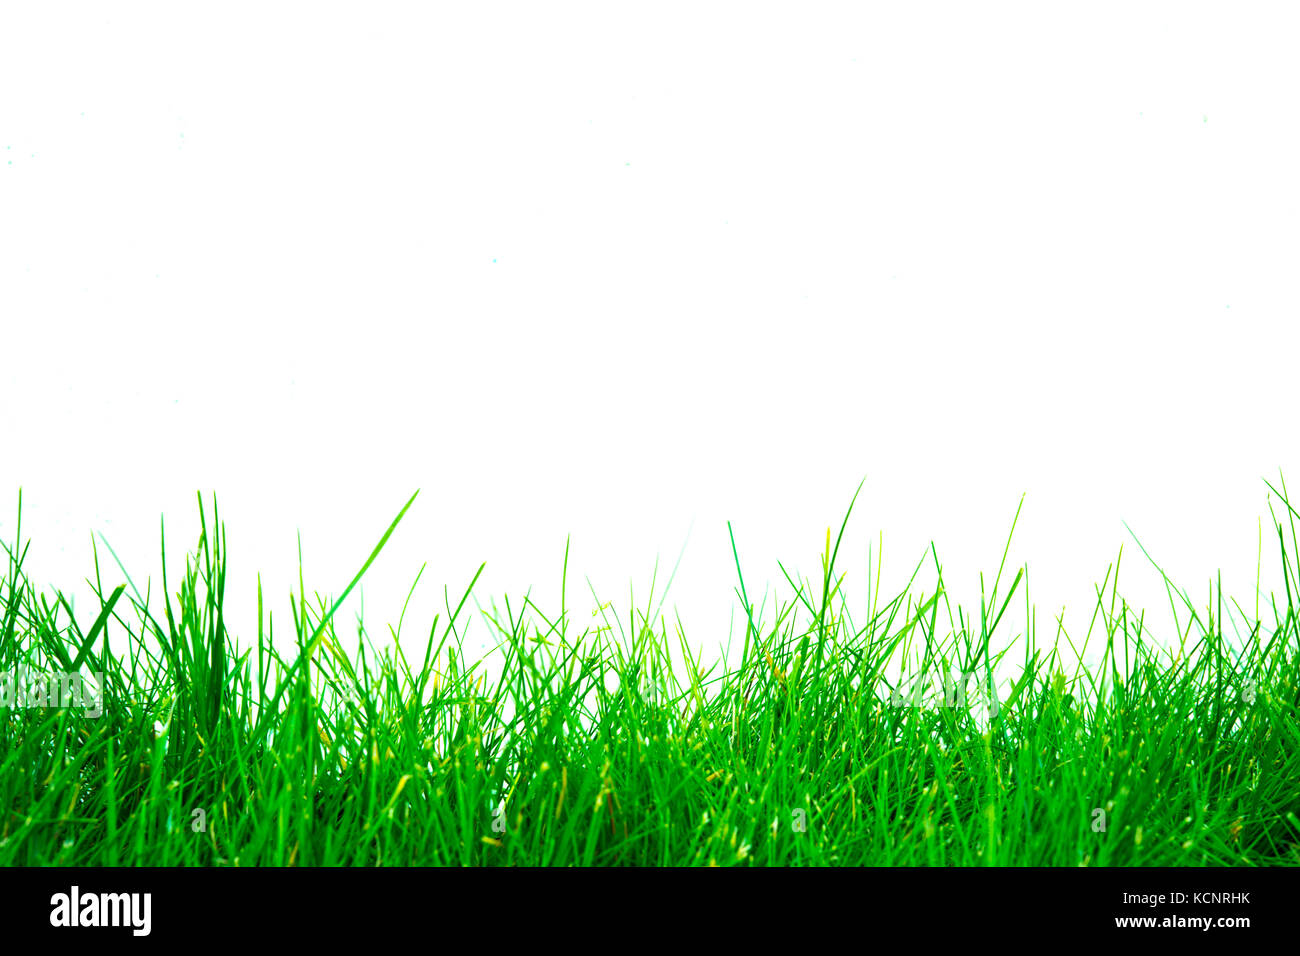 Hình nền cỏ xanh riêng biệt sẽ mang lại cho bạn những trải nghiệm tuyệt vời về sự tự nhiên và sự sống động. Hãy xem bức ảnh này để cảm nhận sự yên tĩnh và thanh bình của không gian xanh.